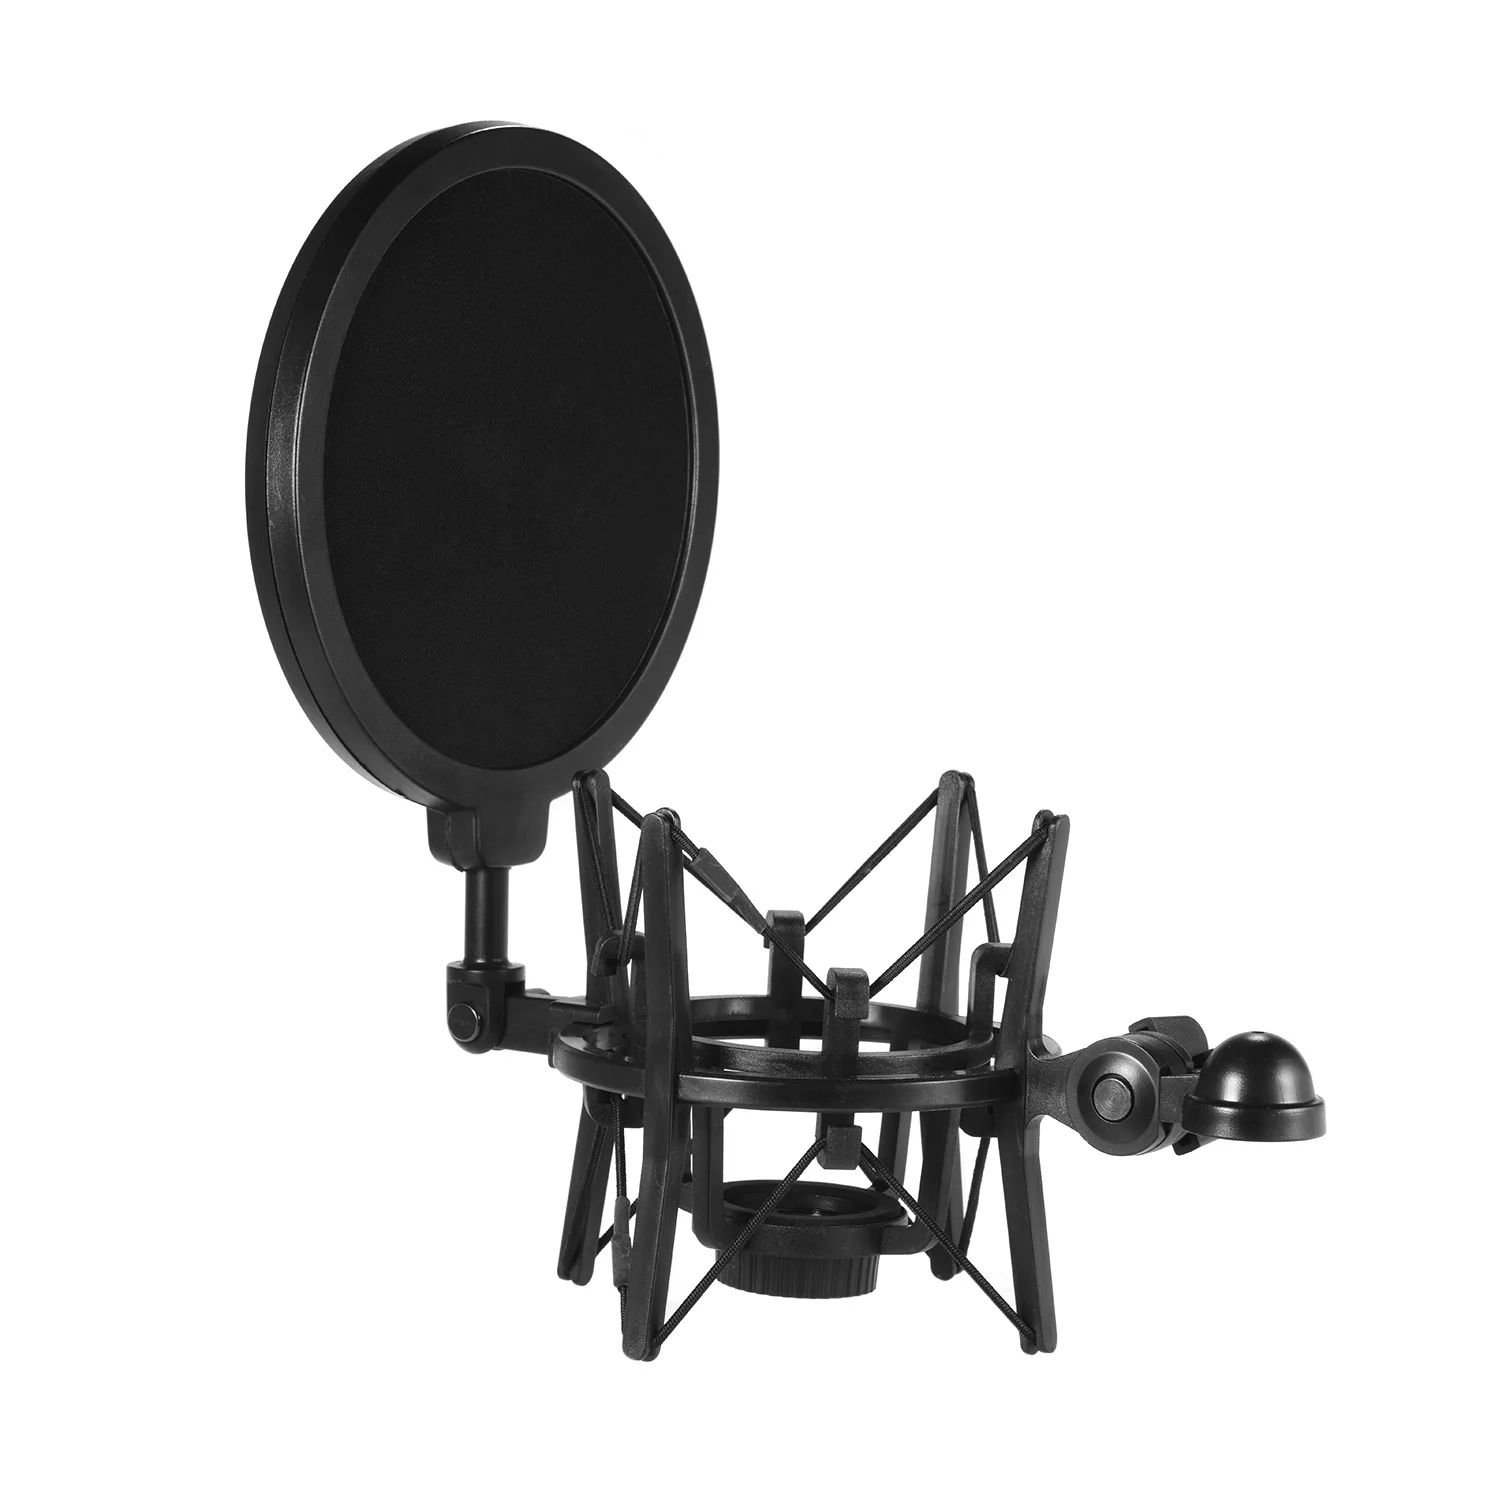 Univerdal пластиковый конденсаторный микрофон амортизатор держатель кронштейн антивибрационный с поп-фильтром для студийной записи музыки